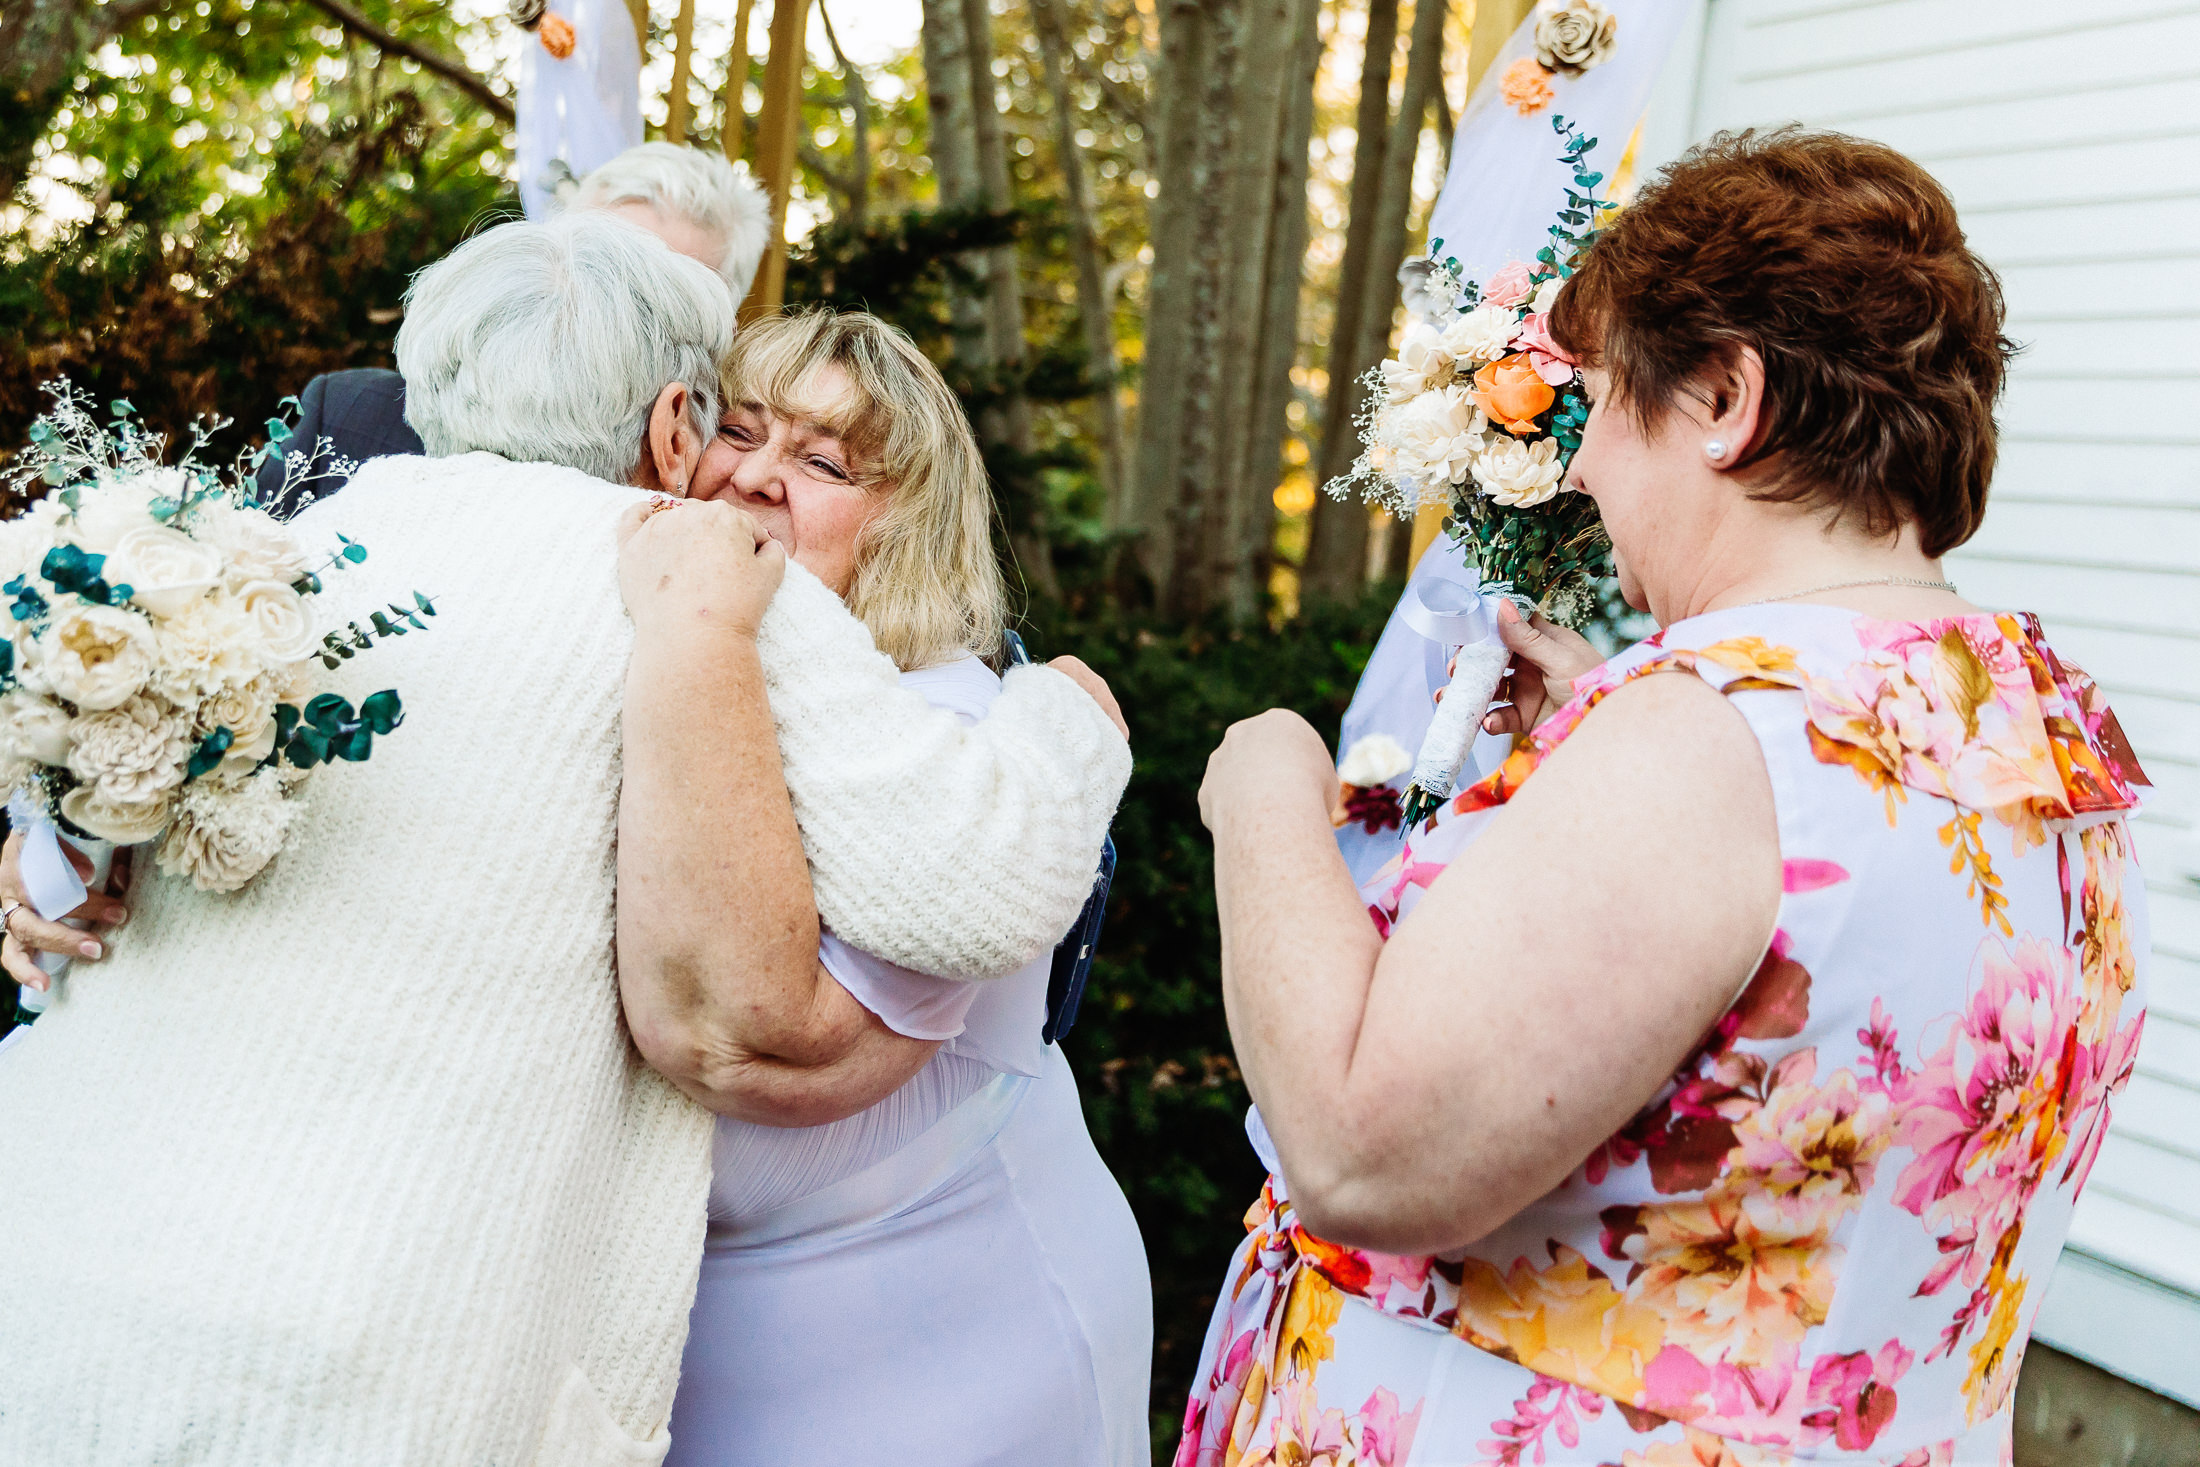 emotional bride hugging groom's mother after wedding ceremony